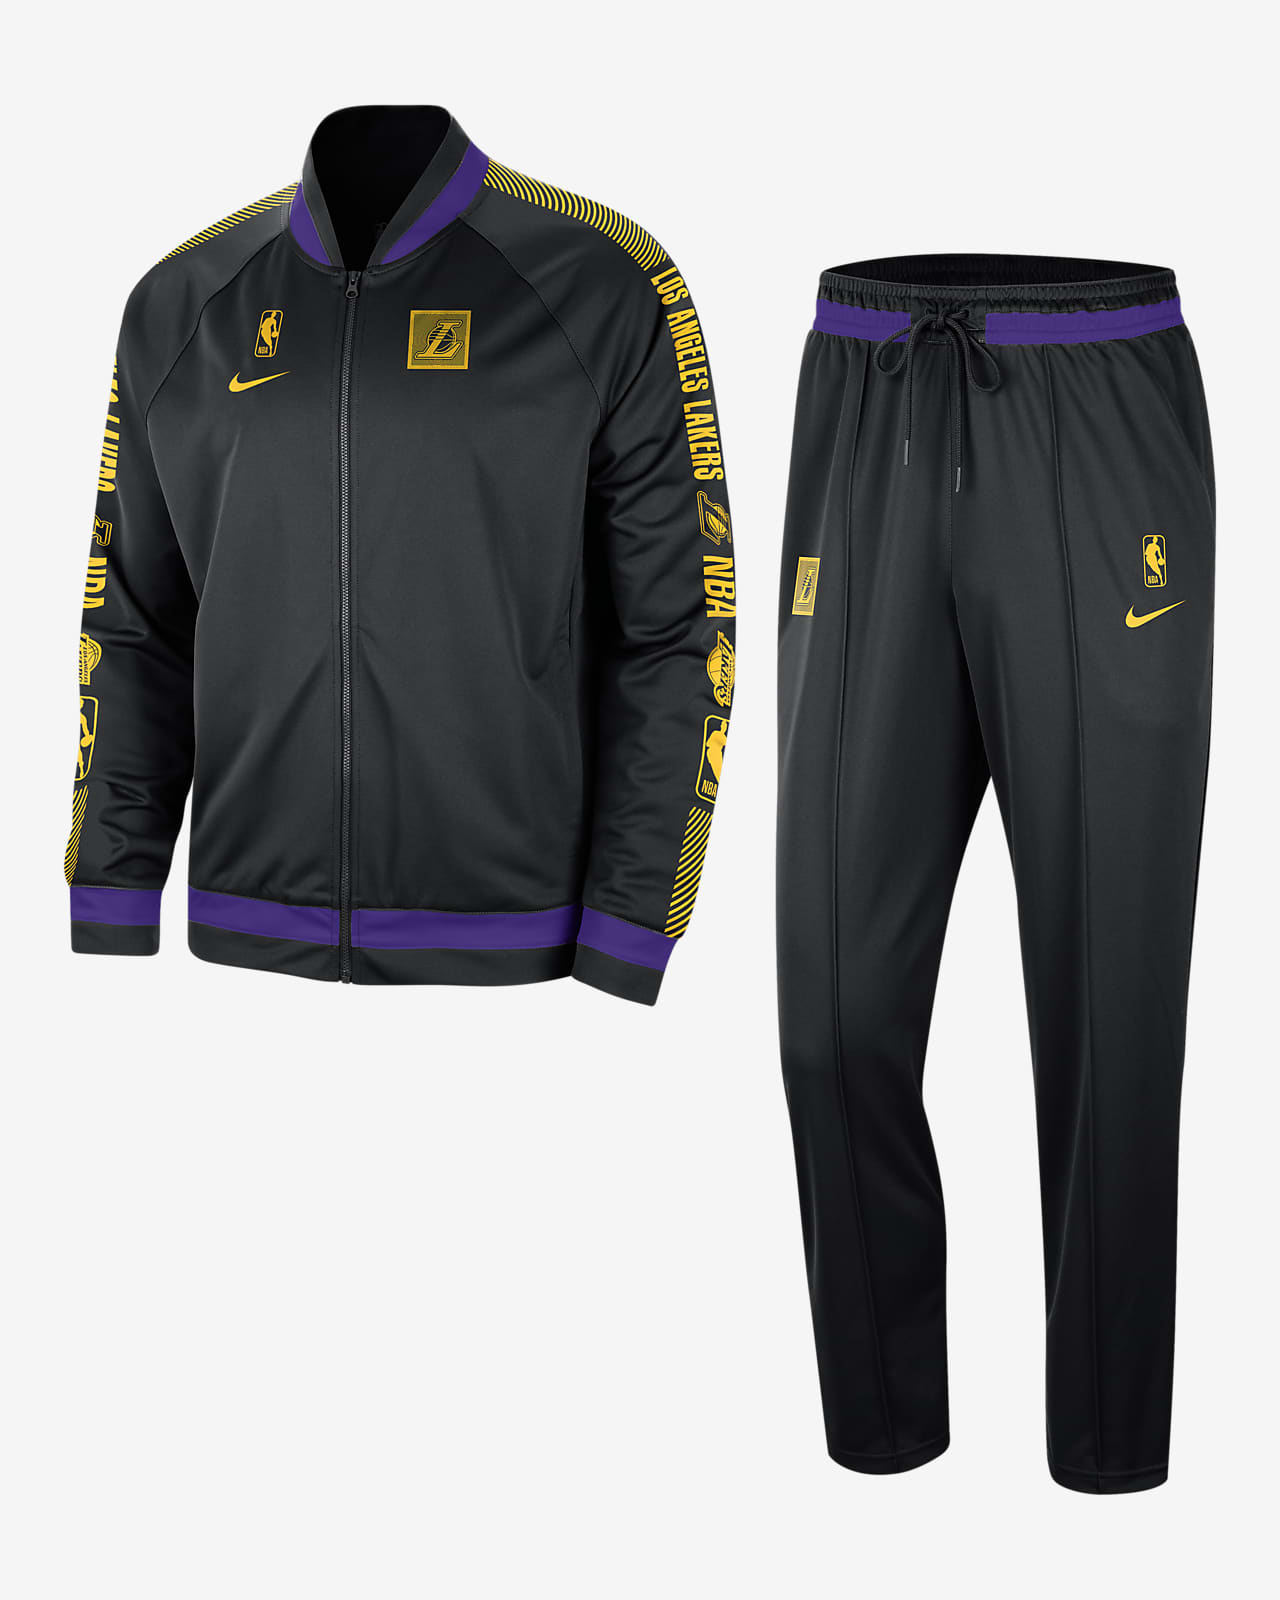 Ανδρική φόρμα Nike Dri-FIT NBA Λος Άντζελες Λέικερς Starting 5